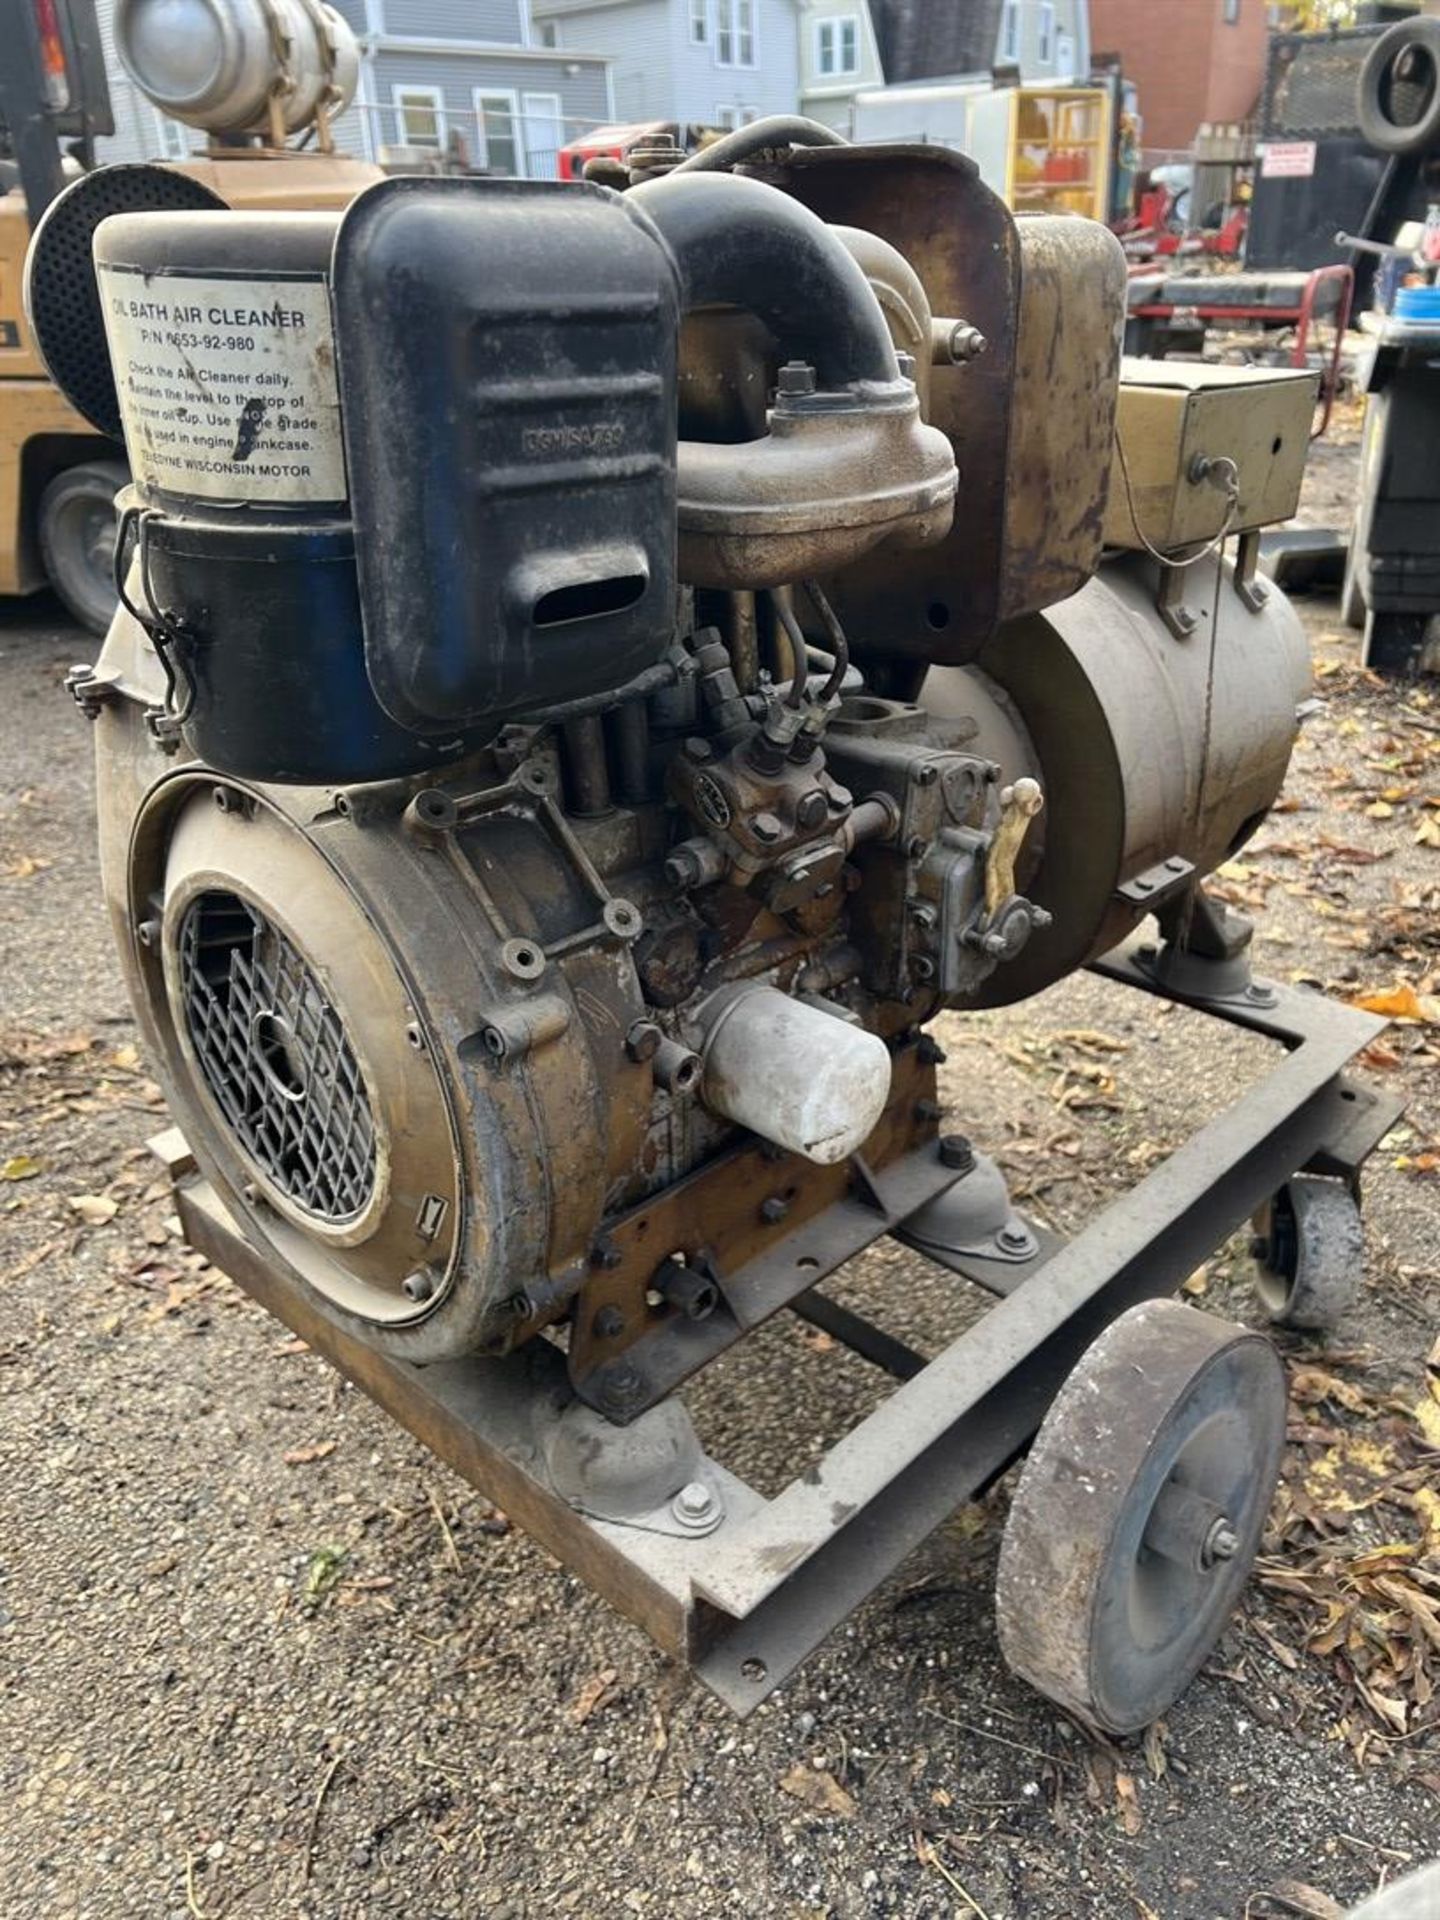 KURZ & ROOT E1535M773F Generator, s/n PU-286NH, 5 KW, 6.25 KVA, w/ Wisconsin Diesel Engine - Image 7 of 7